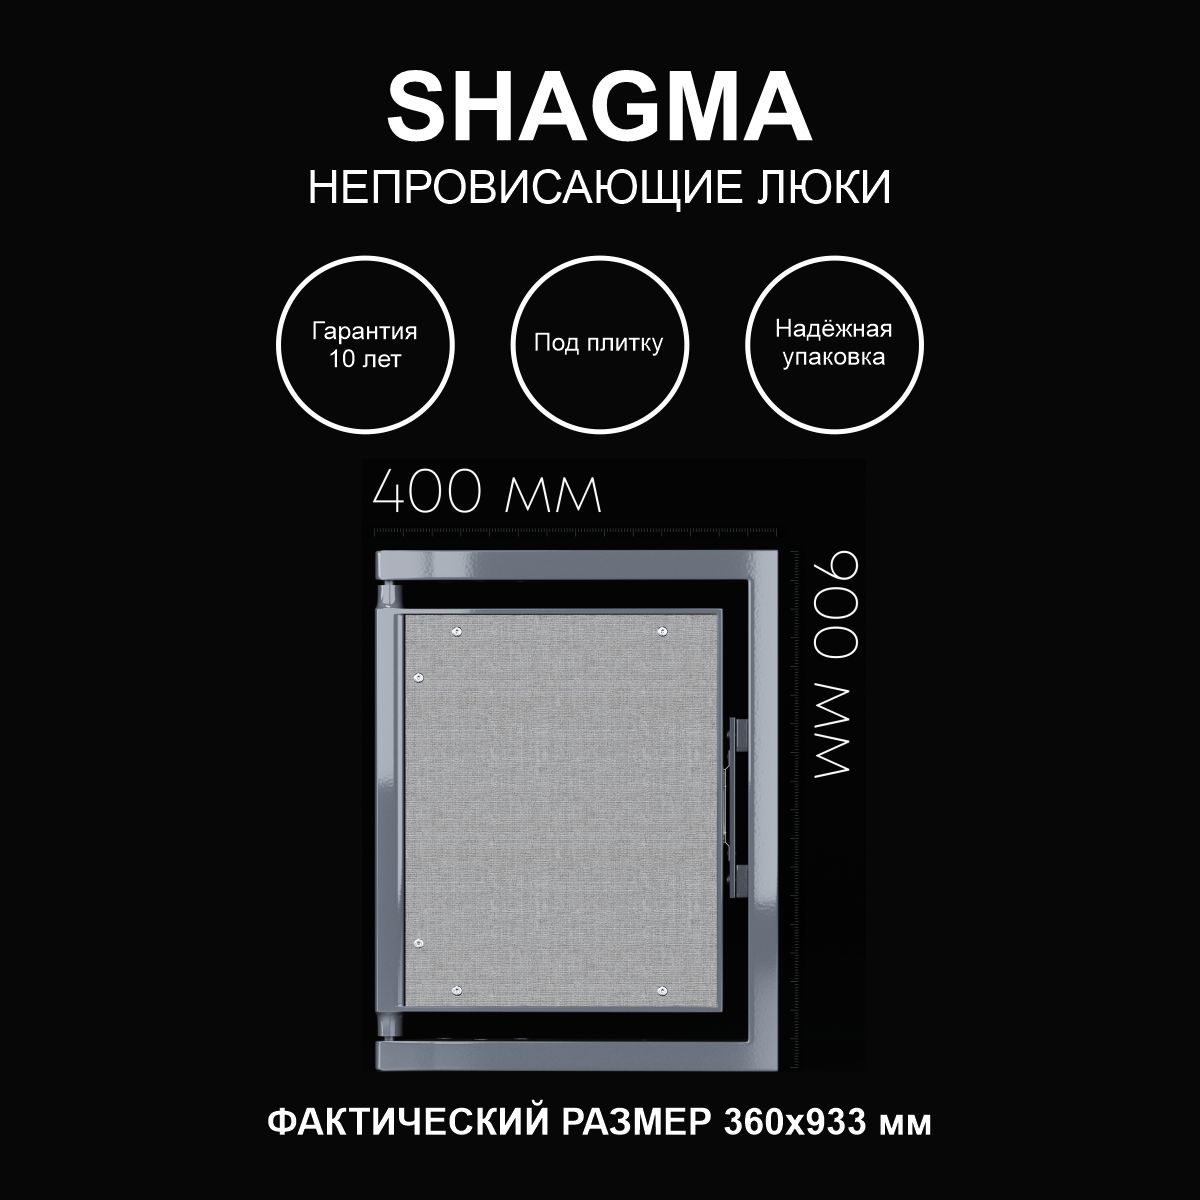 Люк SHAGMA ревизионный под плитку сантехнический 400х900 мм